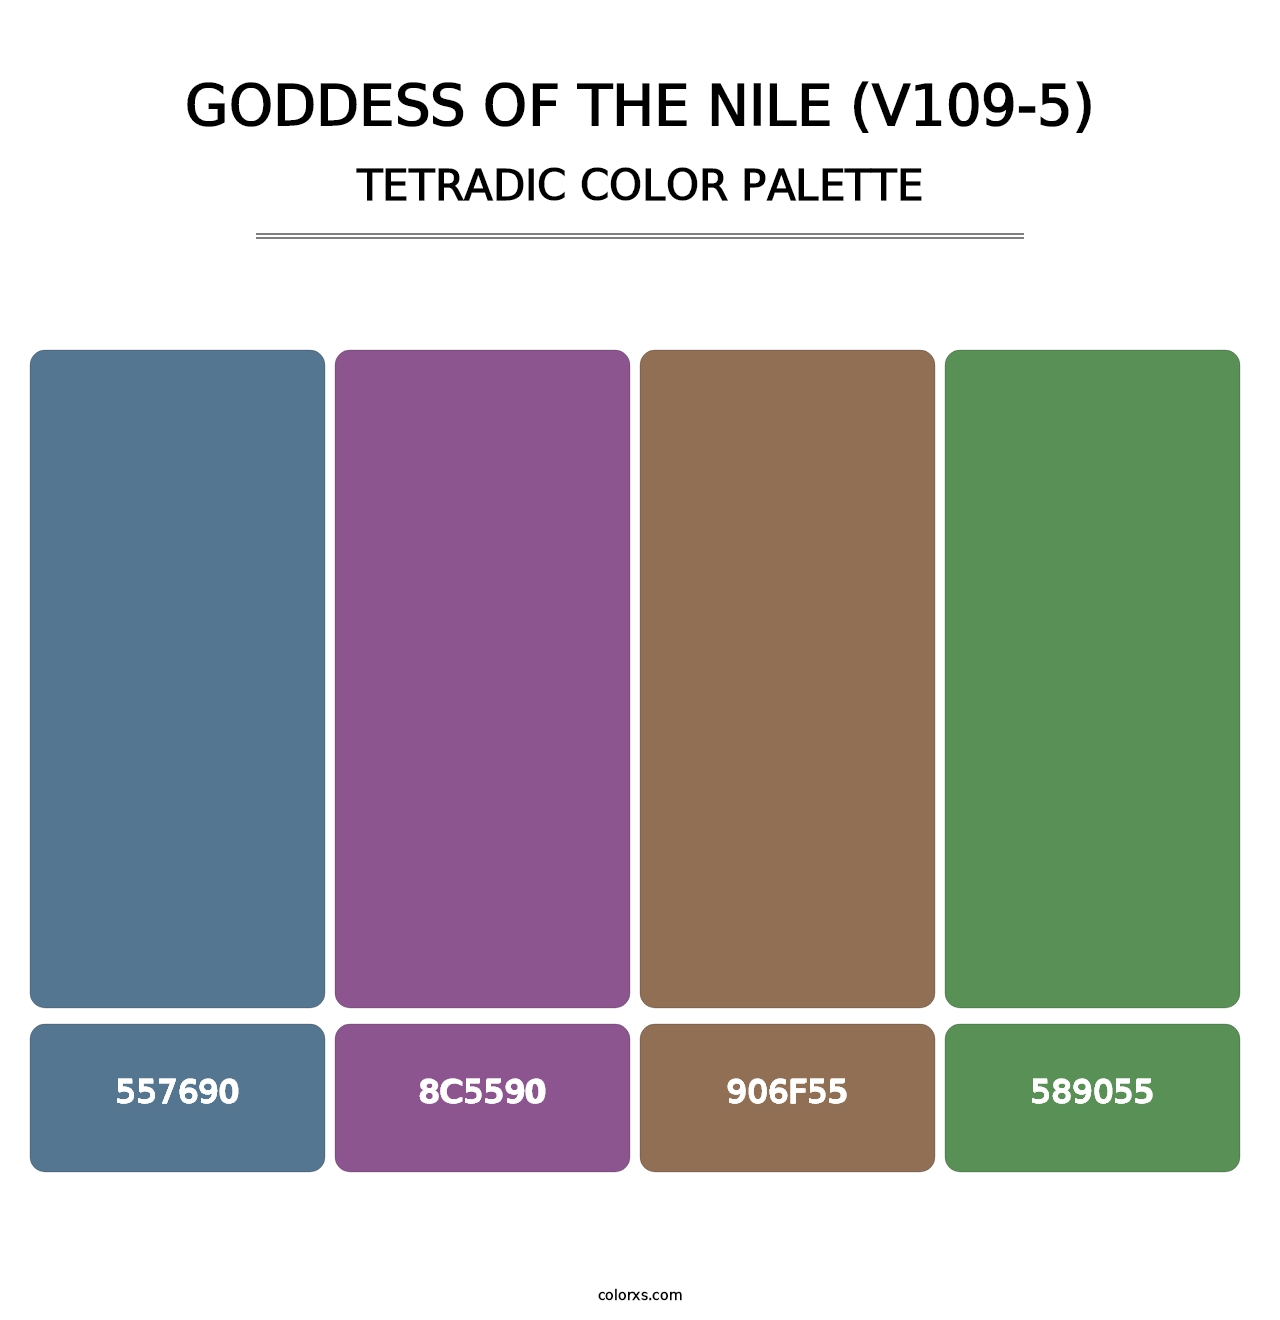 Goddess of the Nile (V109-5) - Tetradic Color Palette